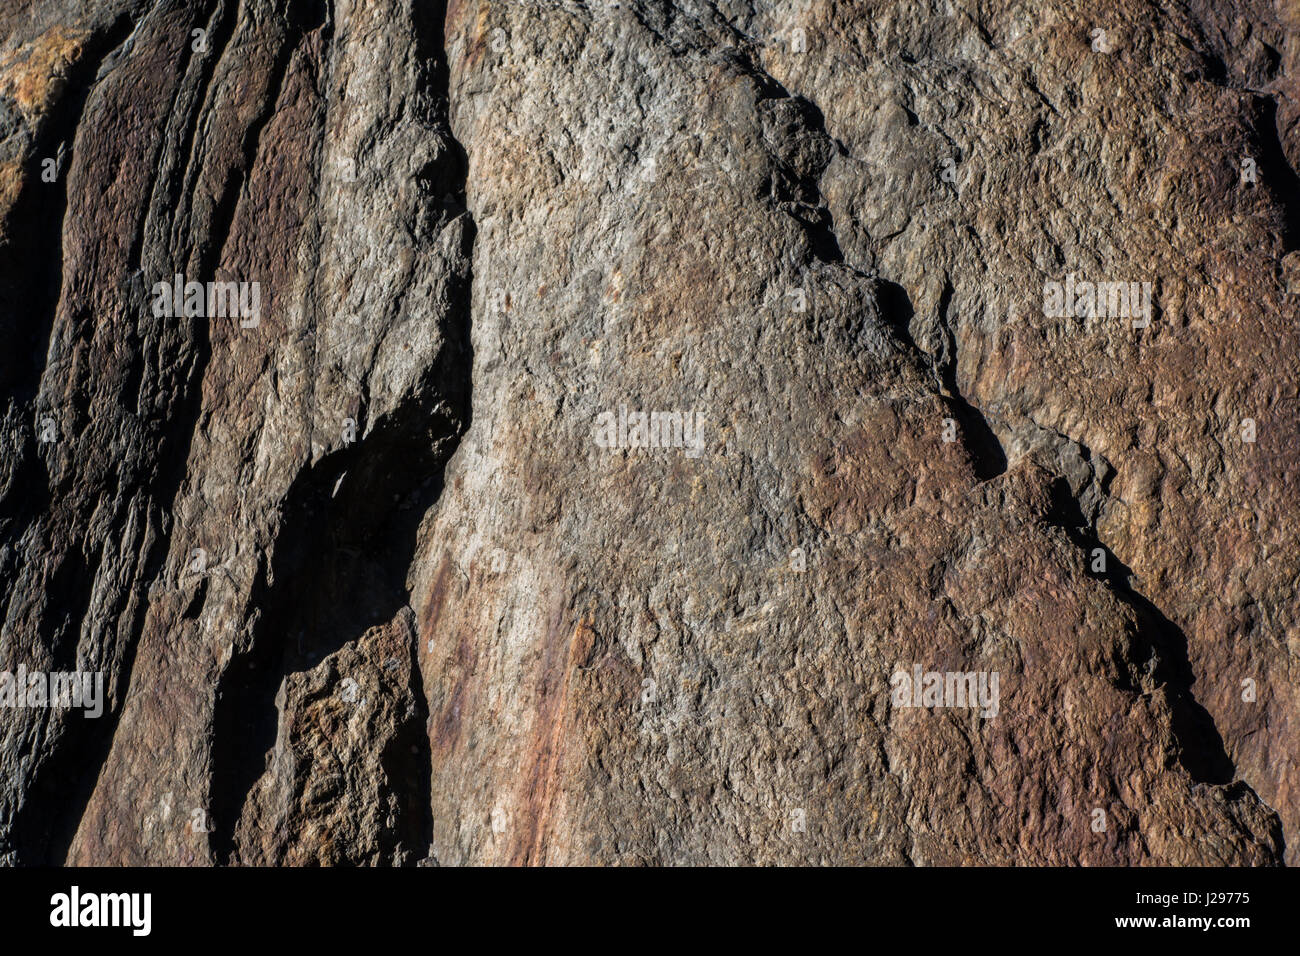 Dettaglio della roccia di granito con tracce di ferro rosso in superficie e spiovente con segni di erosione Foto Stock